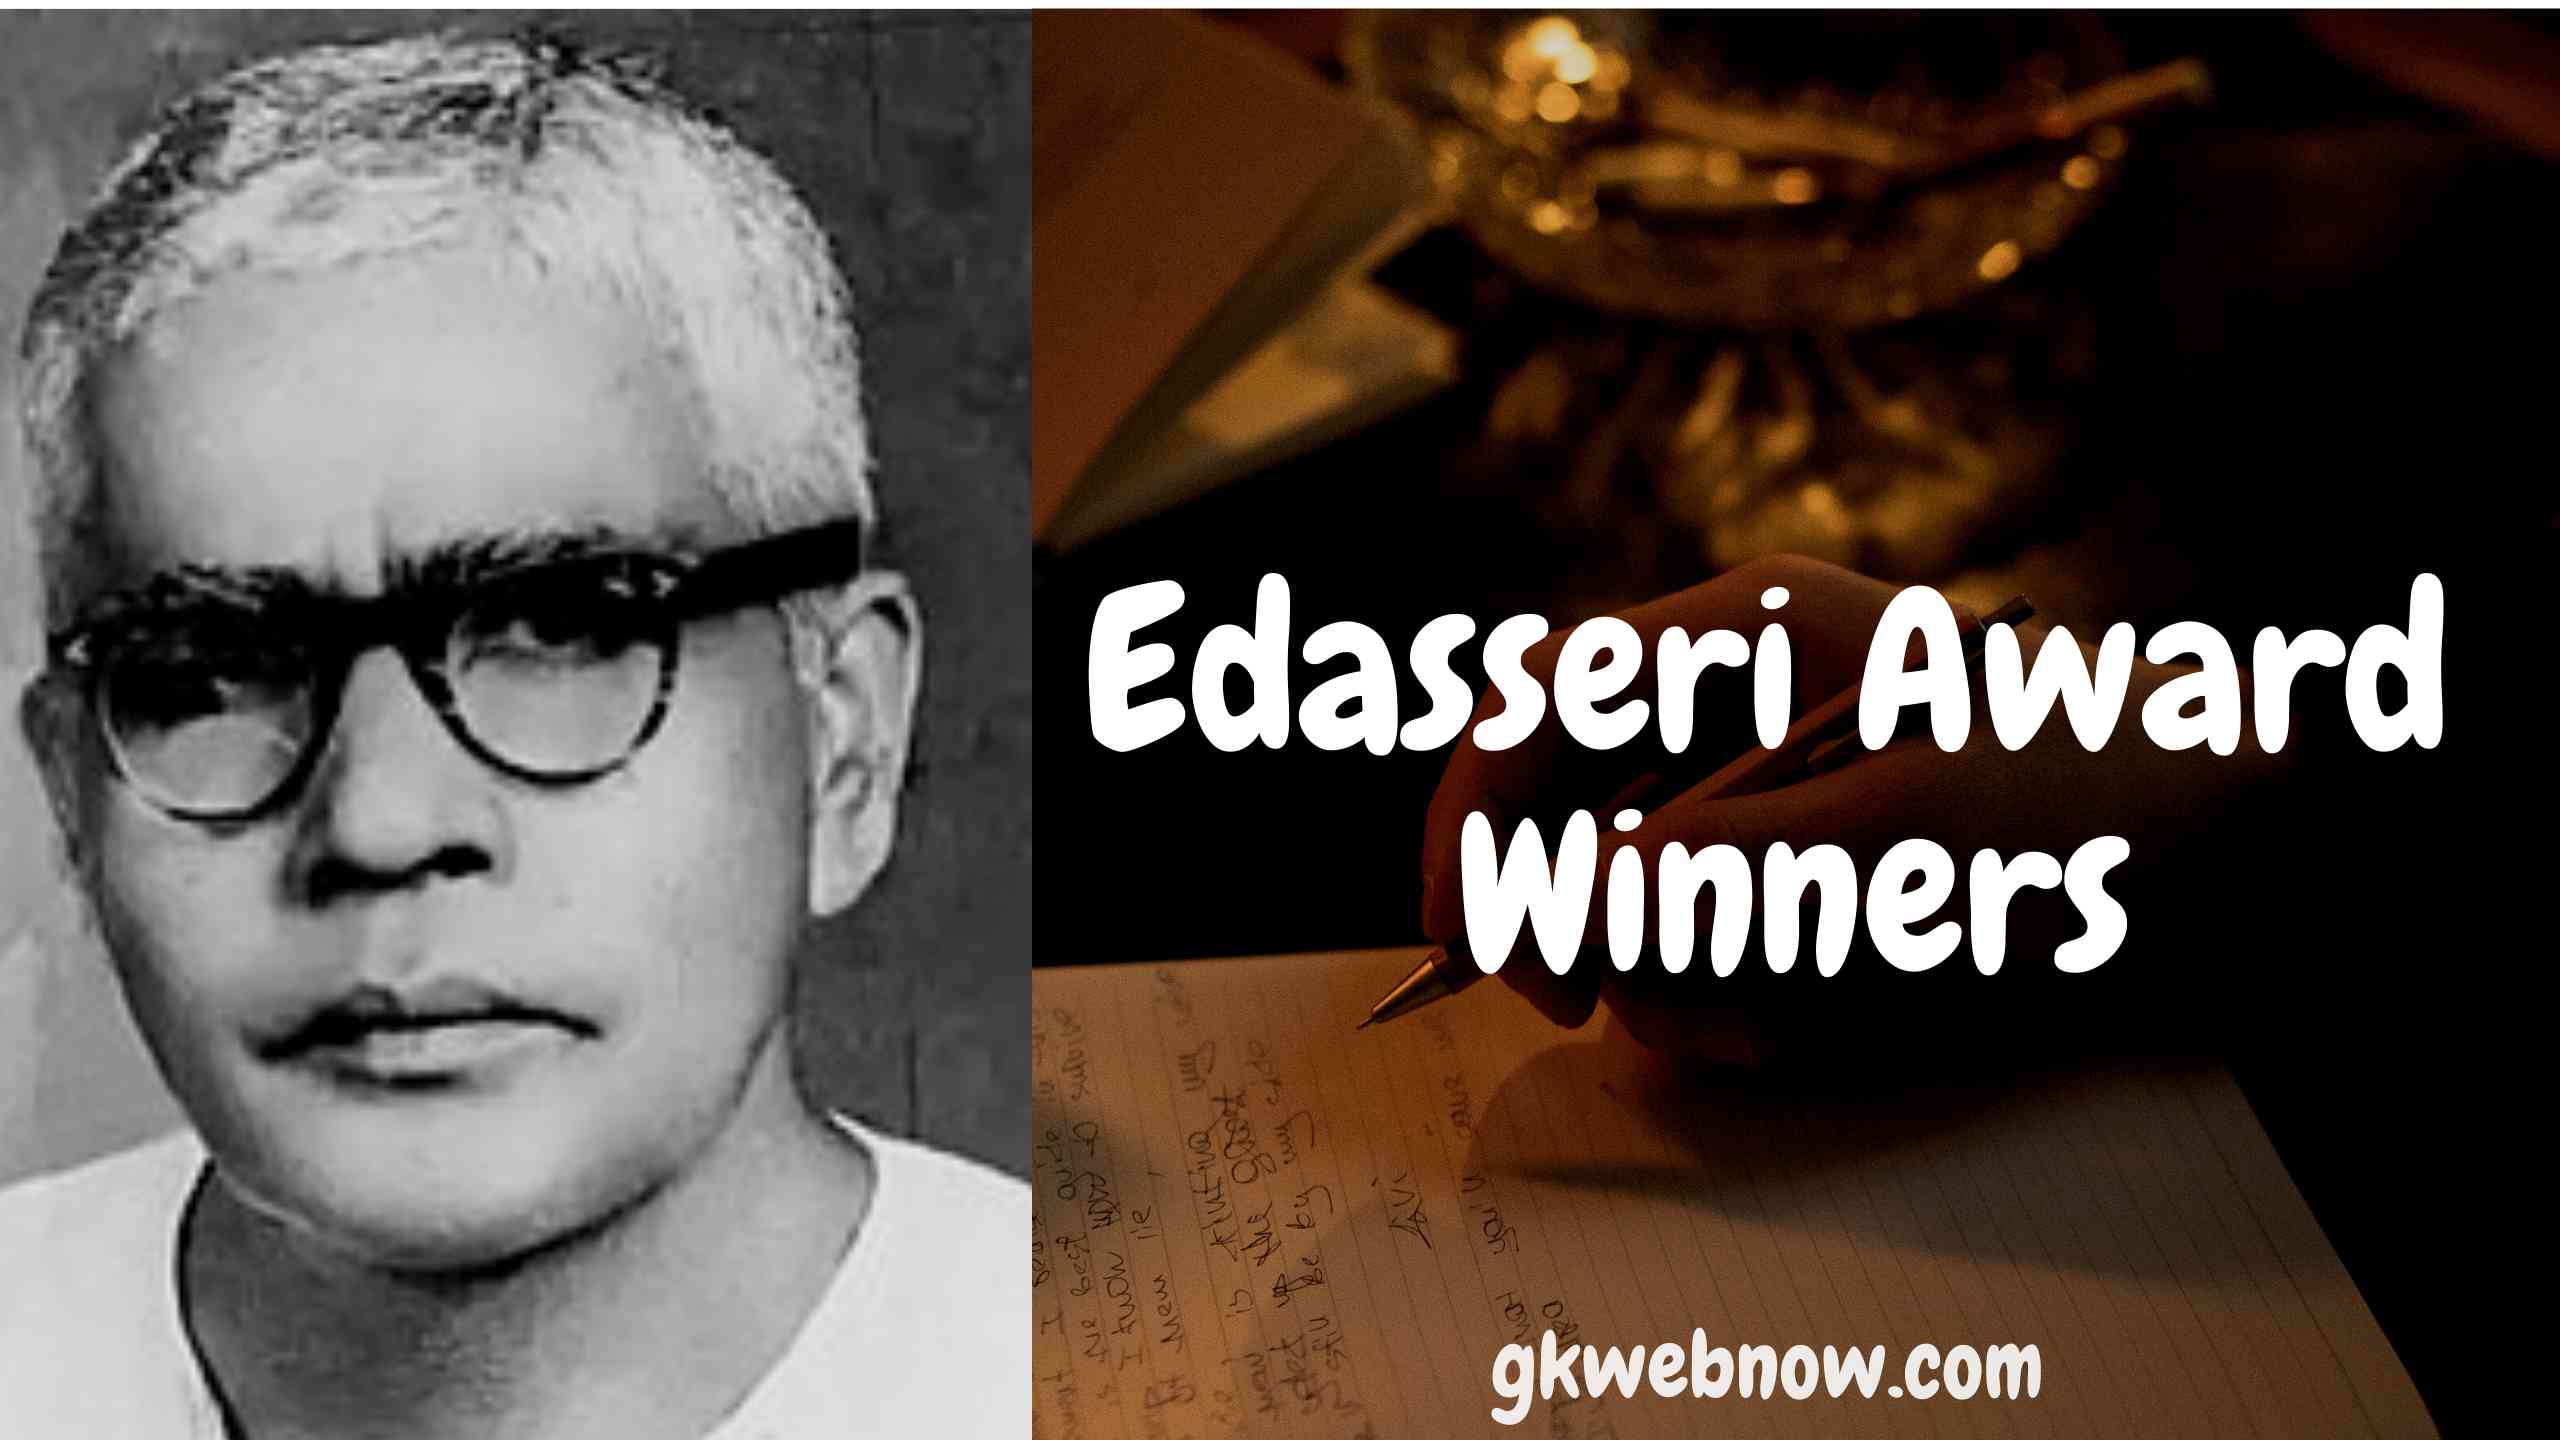 Edasseri Award Winners List